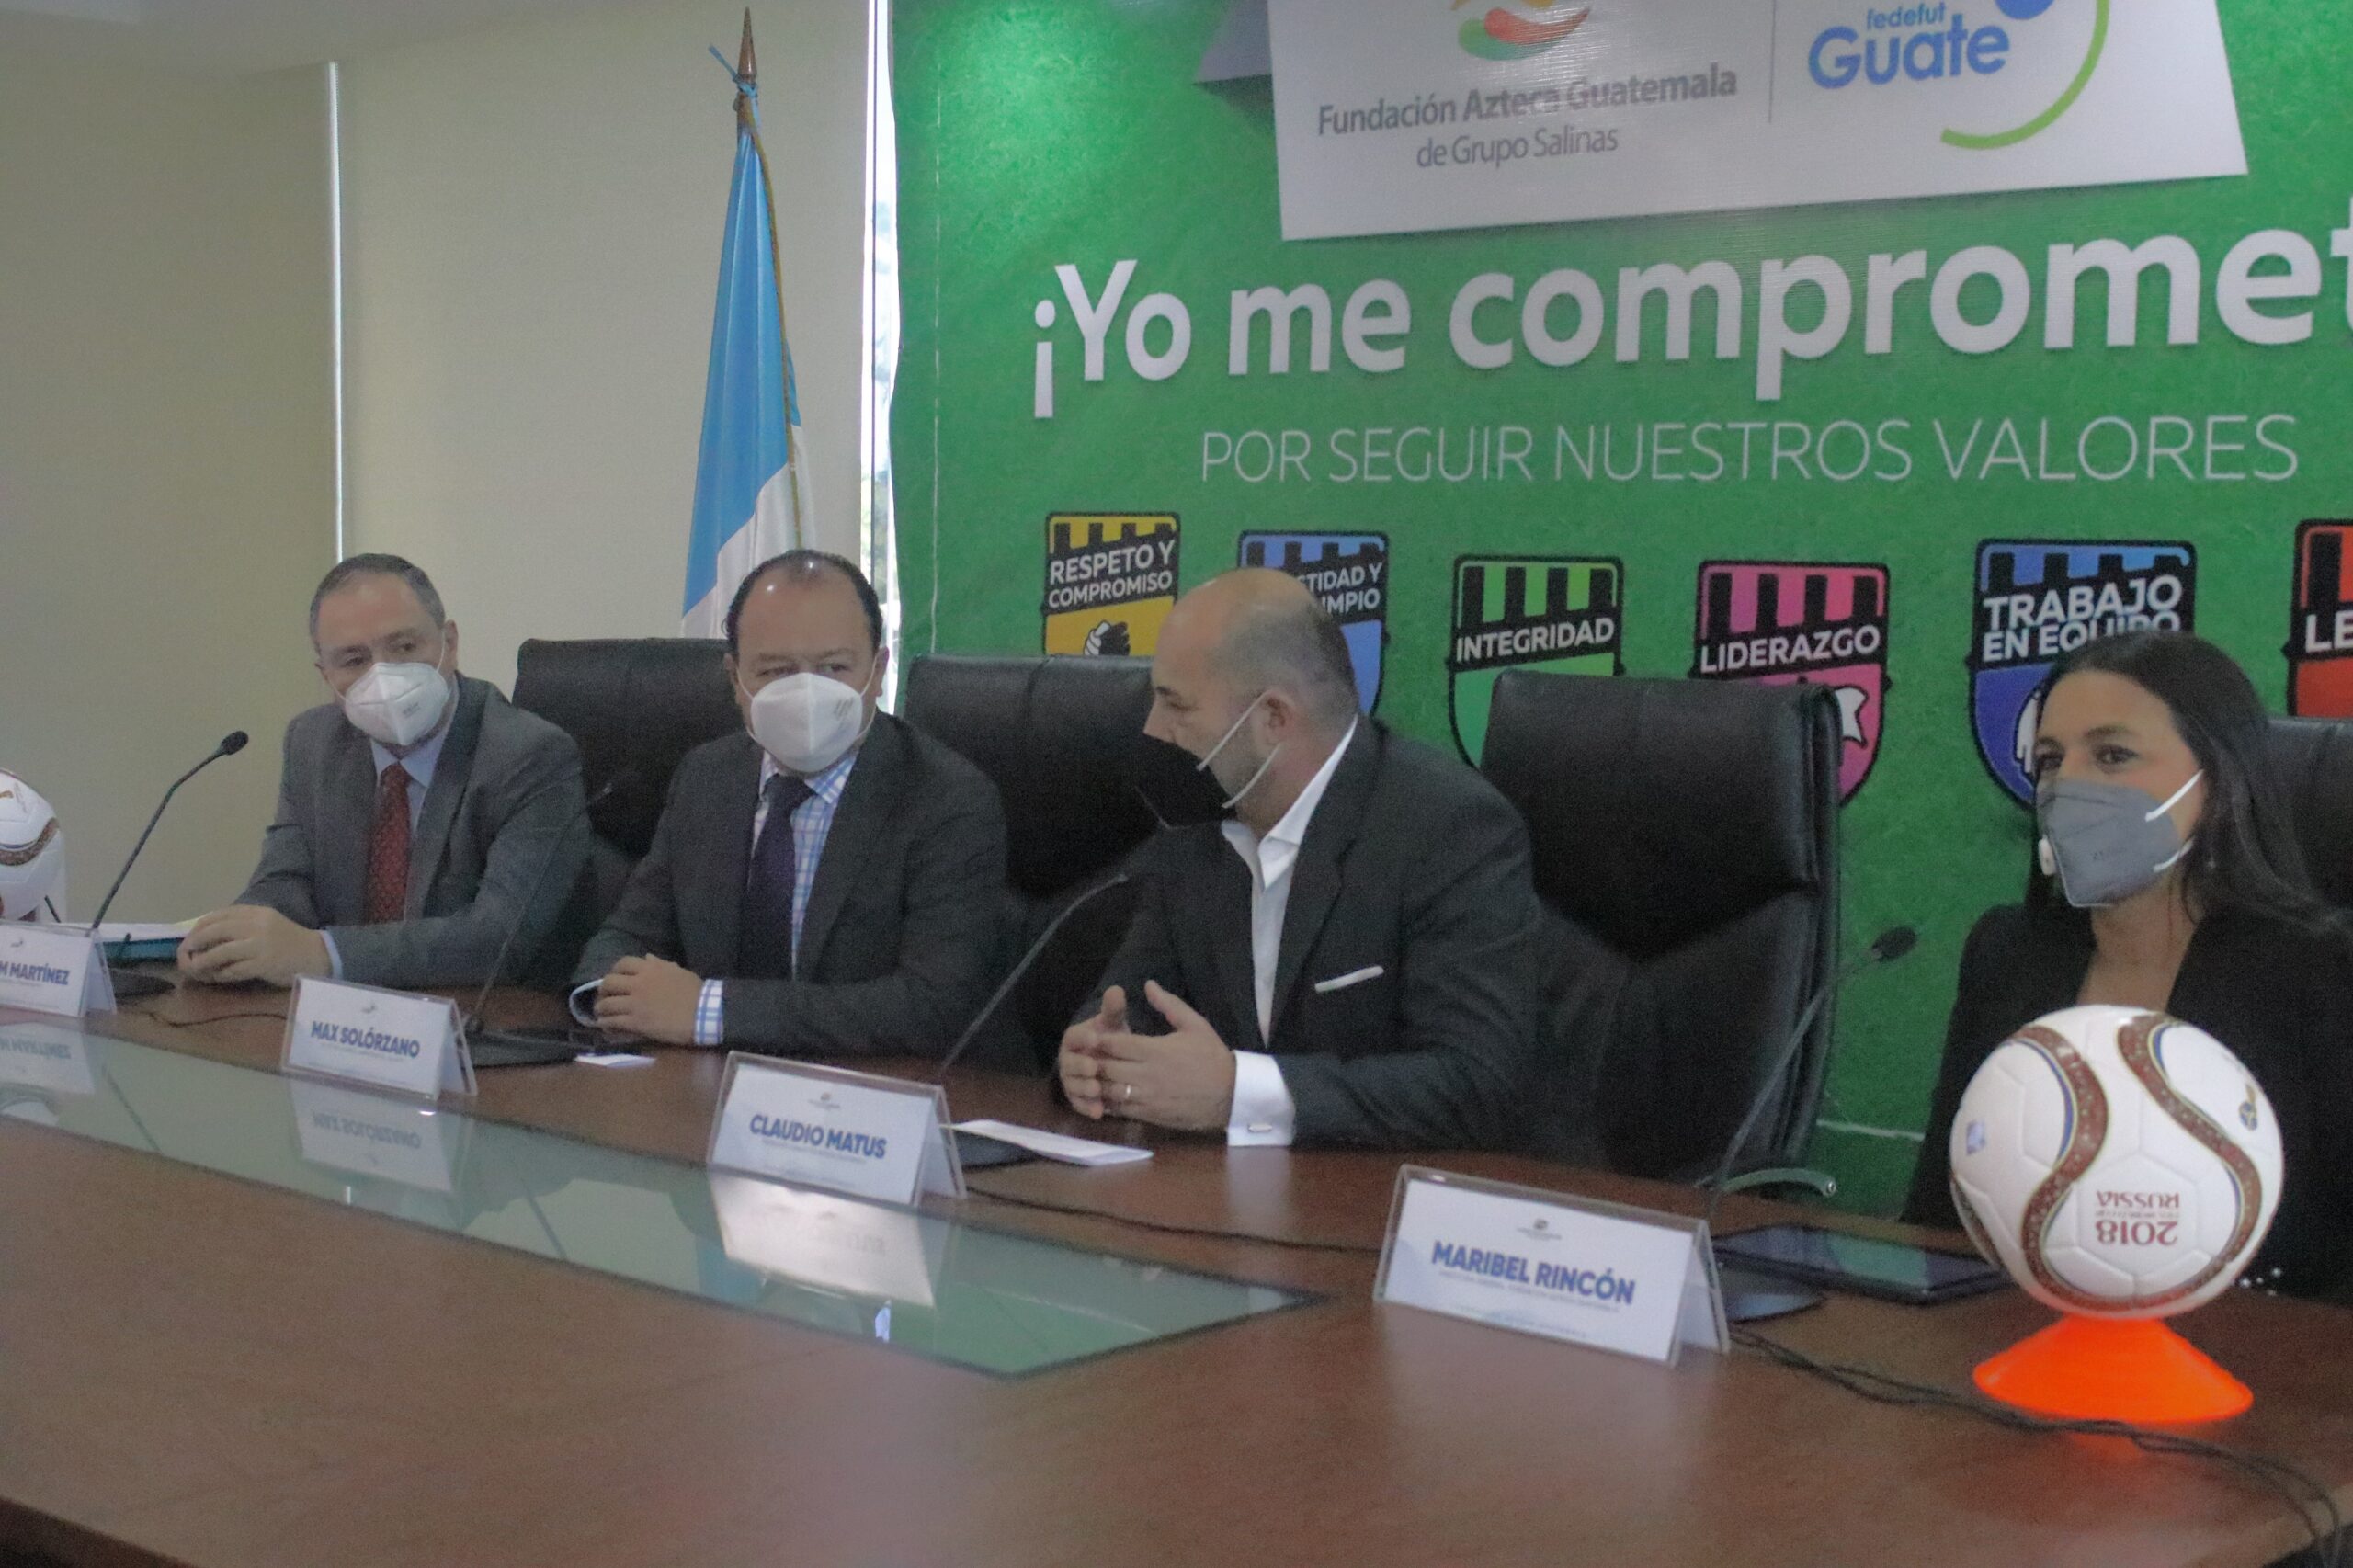 Fundación Azteca Guatemala y la Federación Nacional de Fútbol de Guatemala lanzan campaña “¡Yo me comprometo! por seguir nuestros valores”